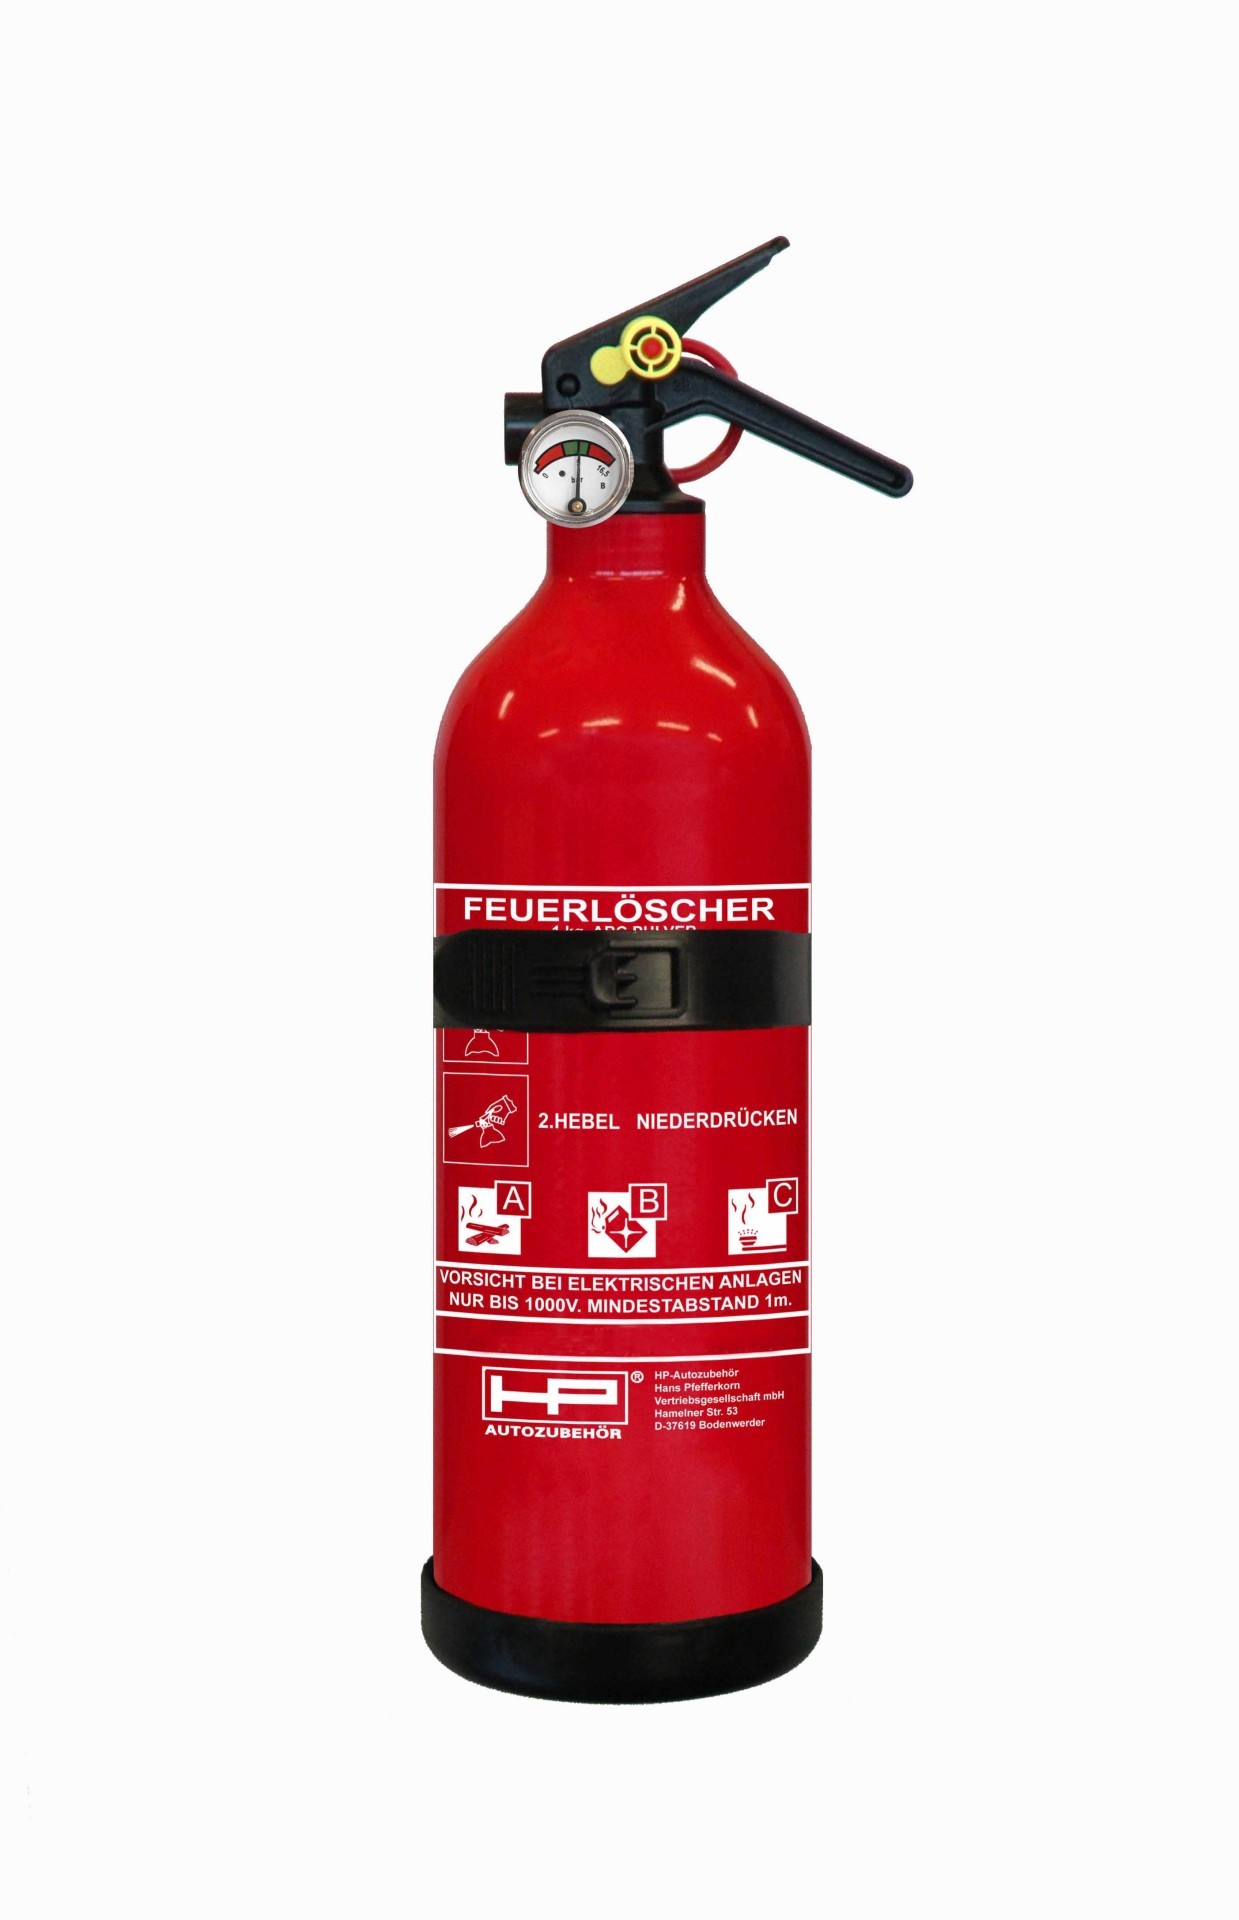 Feuerlöscher 6 KG Pulver inkl. Wandhalterung, Feuerwehr, Ausrüstung, Unsere Produkte